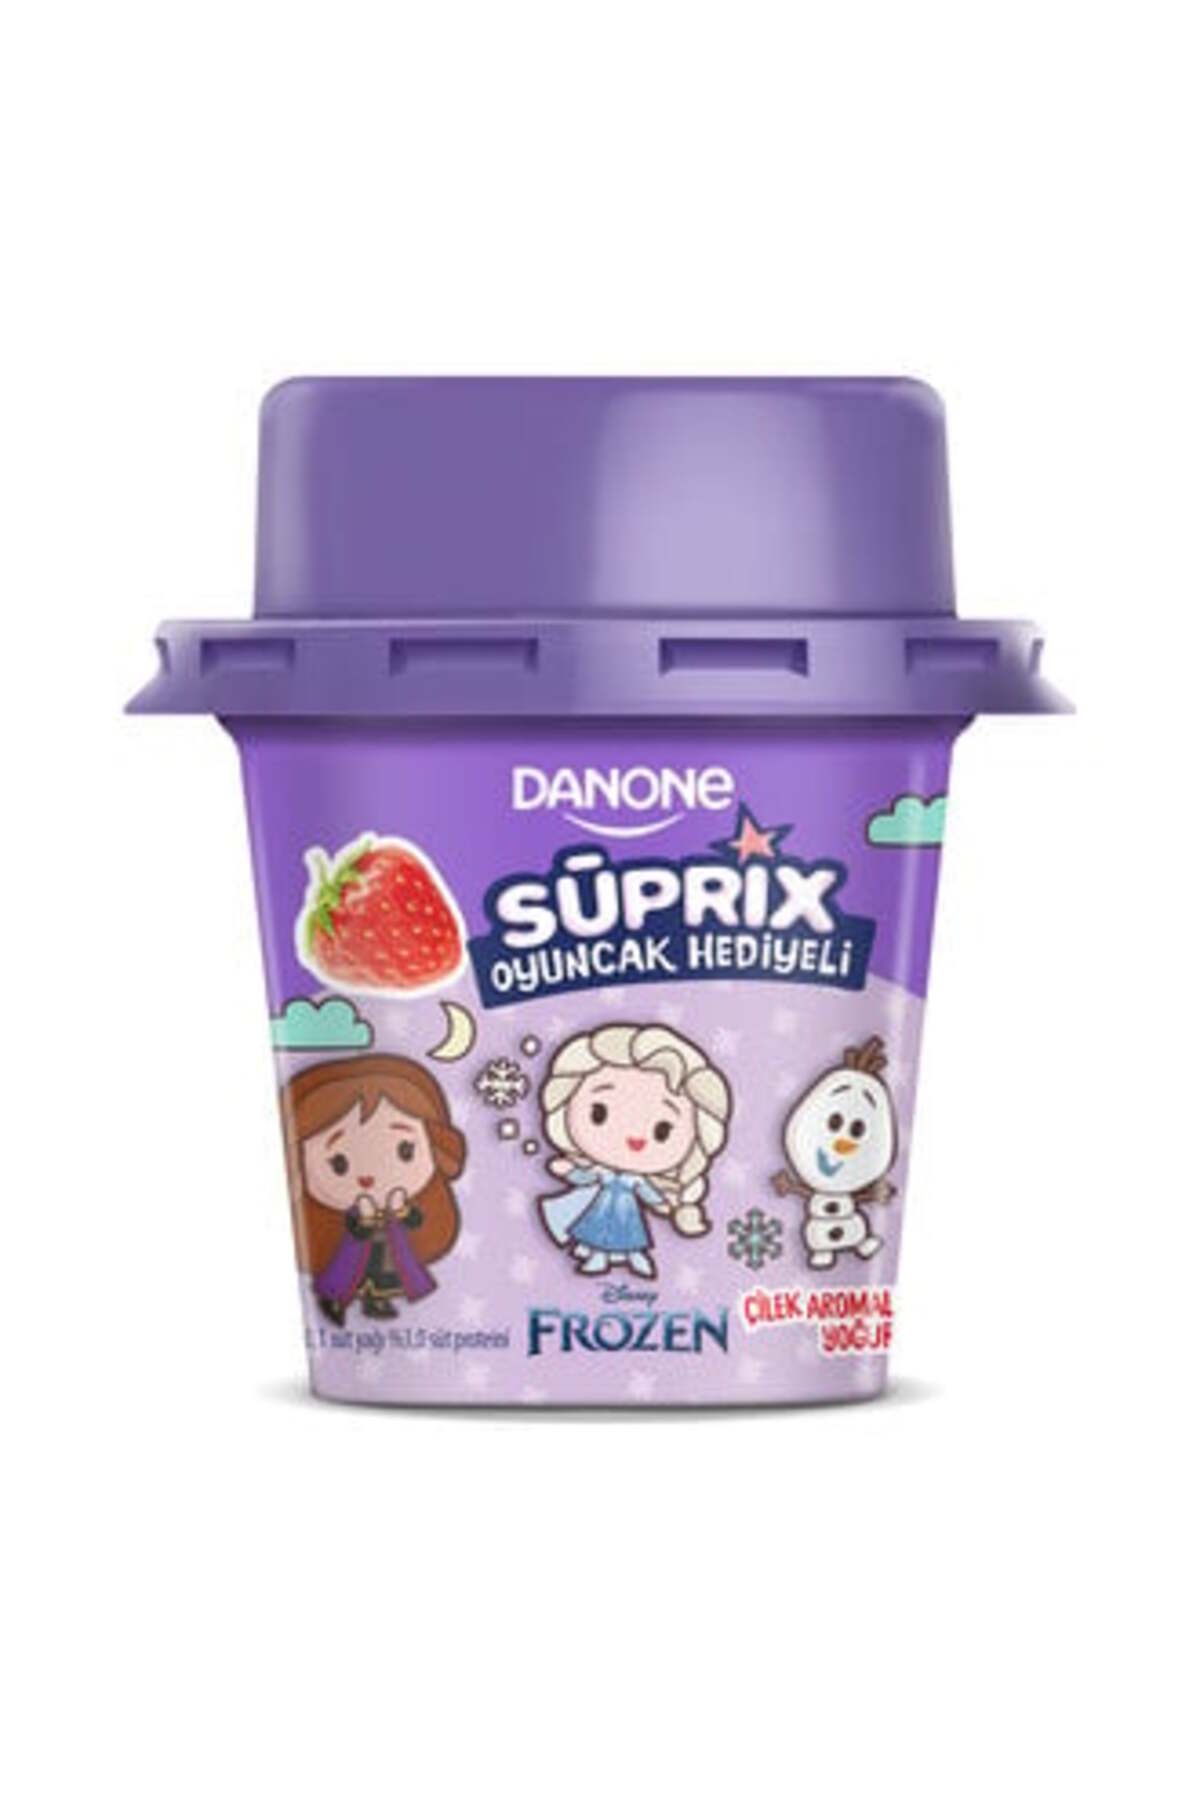 Danone Süprix Frozen Oyuncak Hediyeli Çilek Aromalı Yoğurt 90 Gr ( 2 ADET )